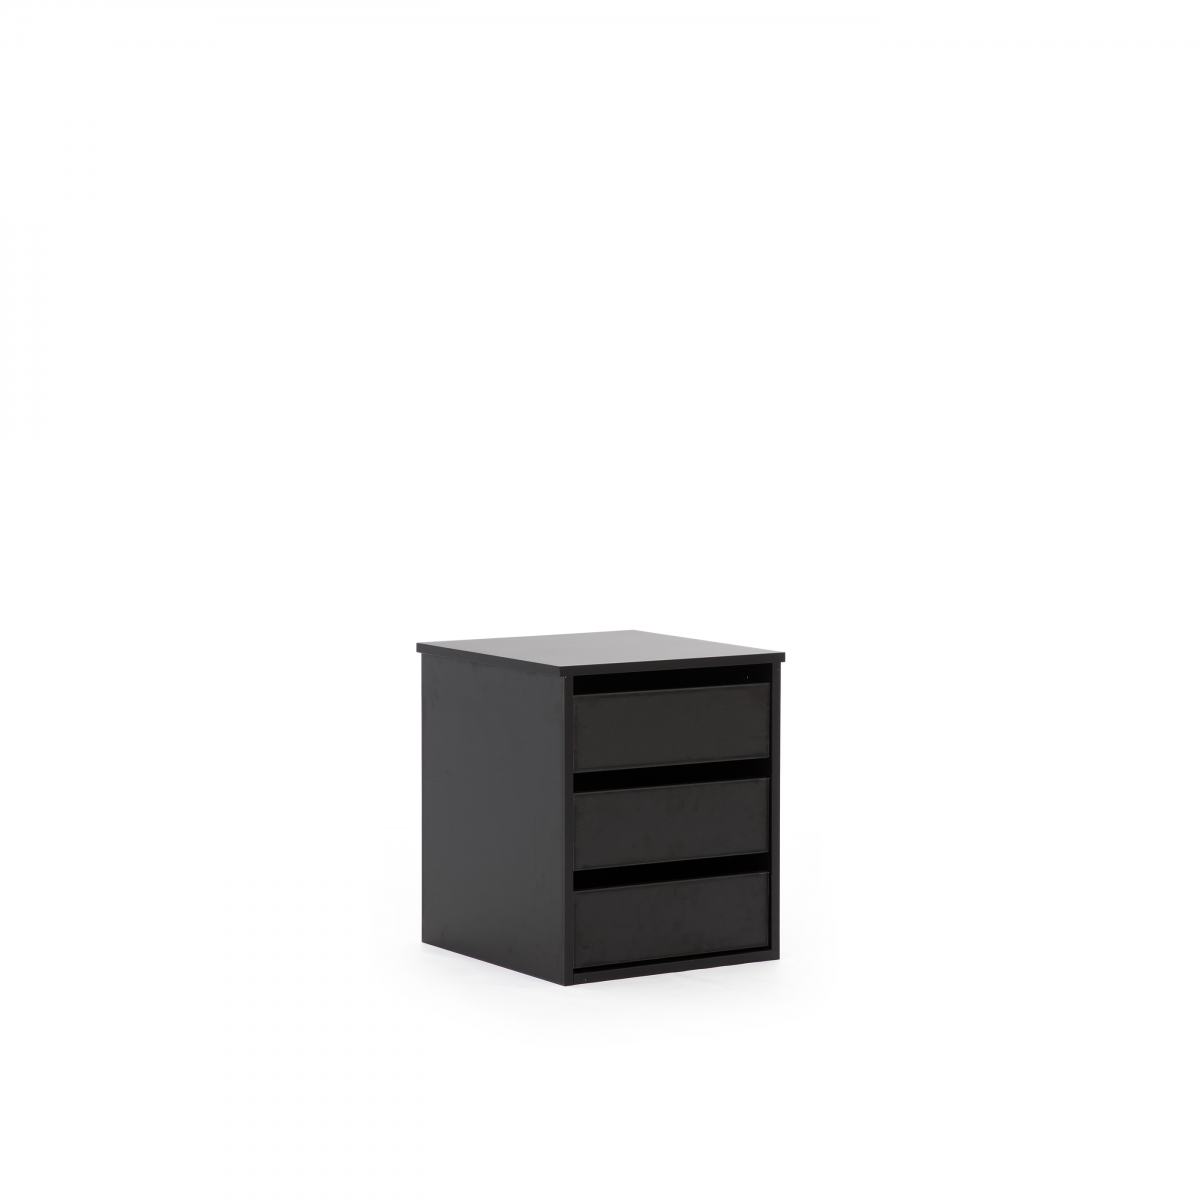 Kontenerek do szafy Ovalo 47 cm - czarny / dąb hicora czarny kontener do szafy